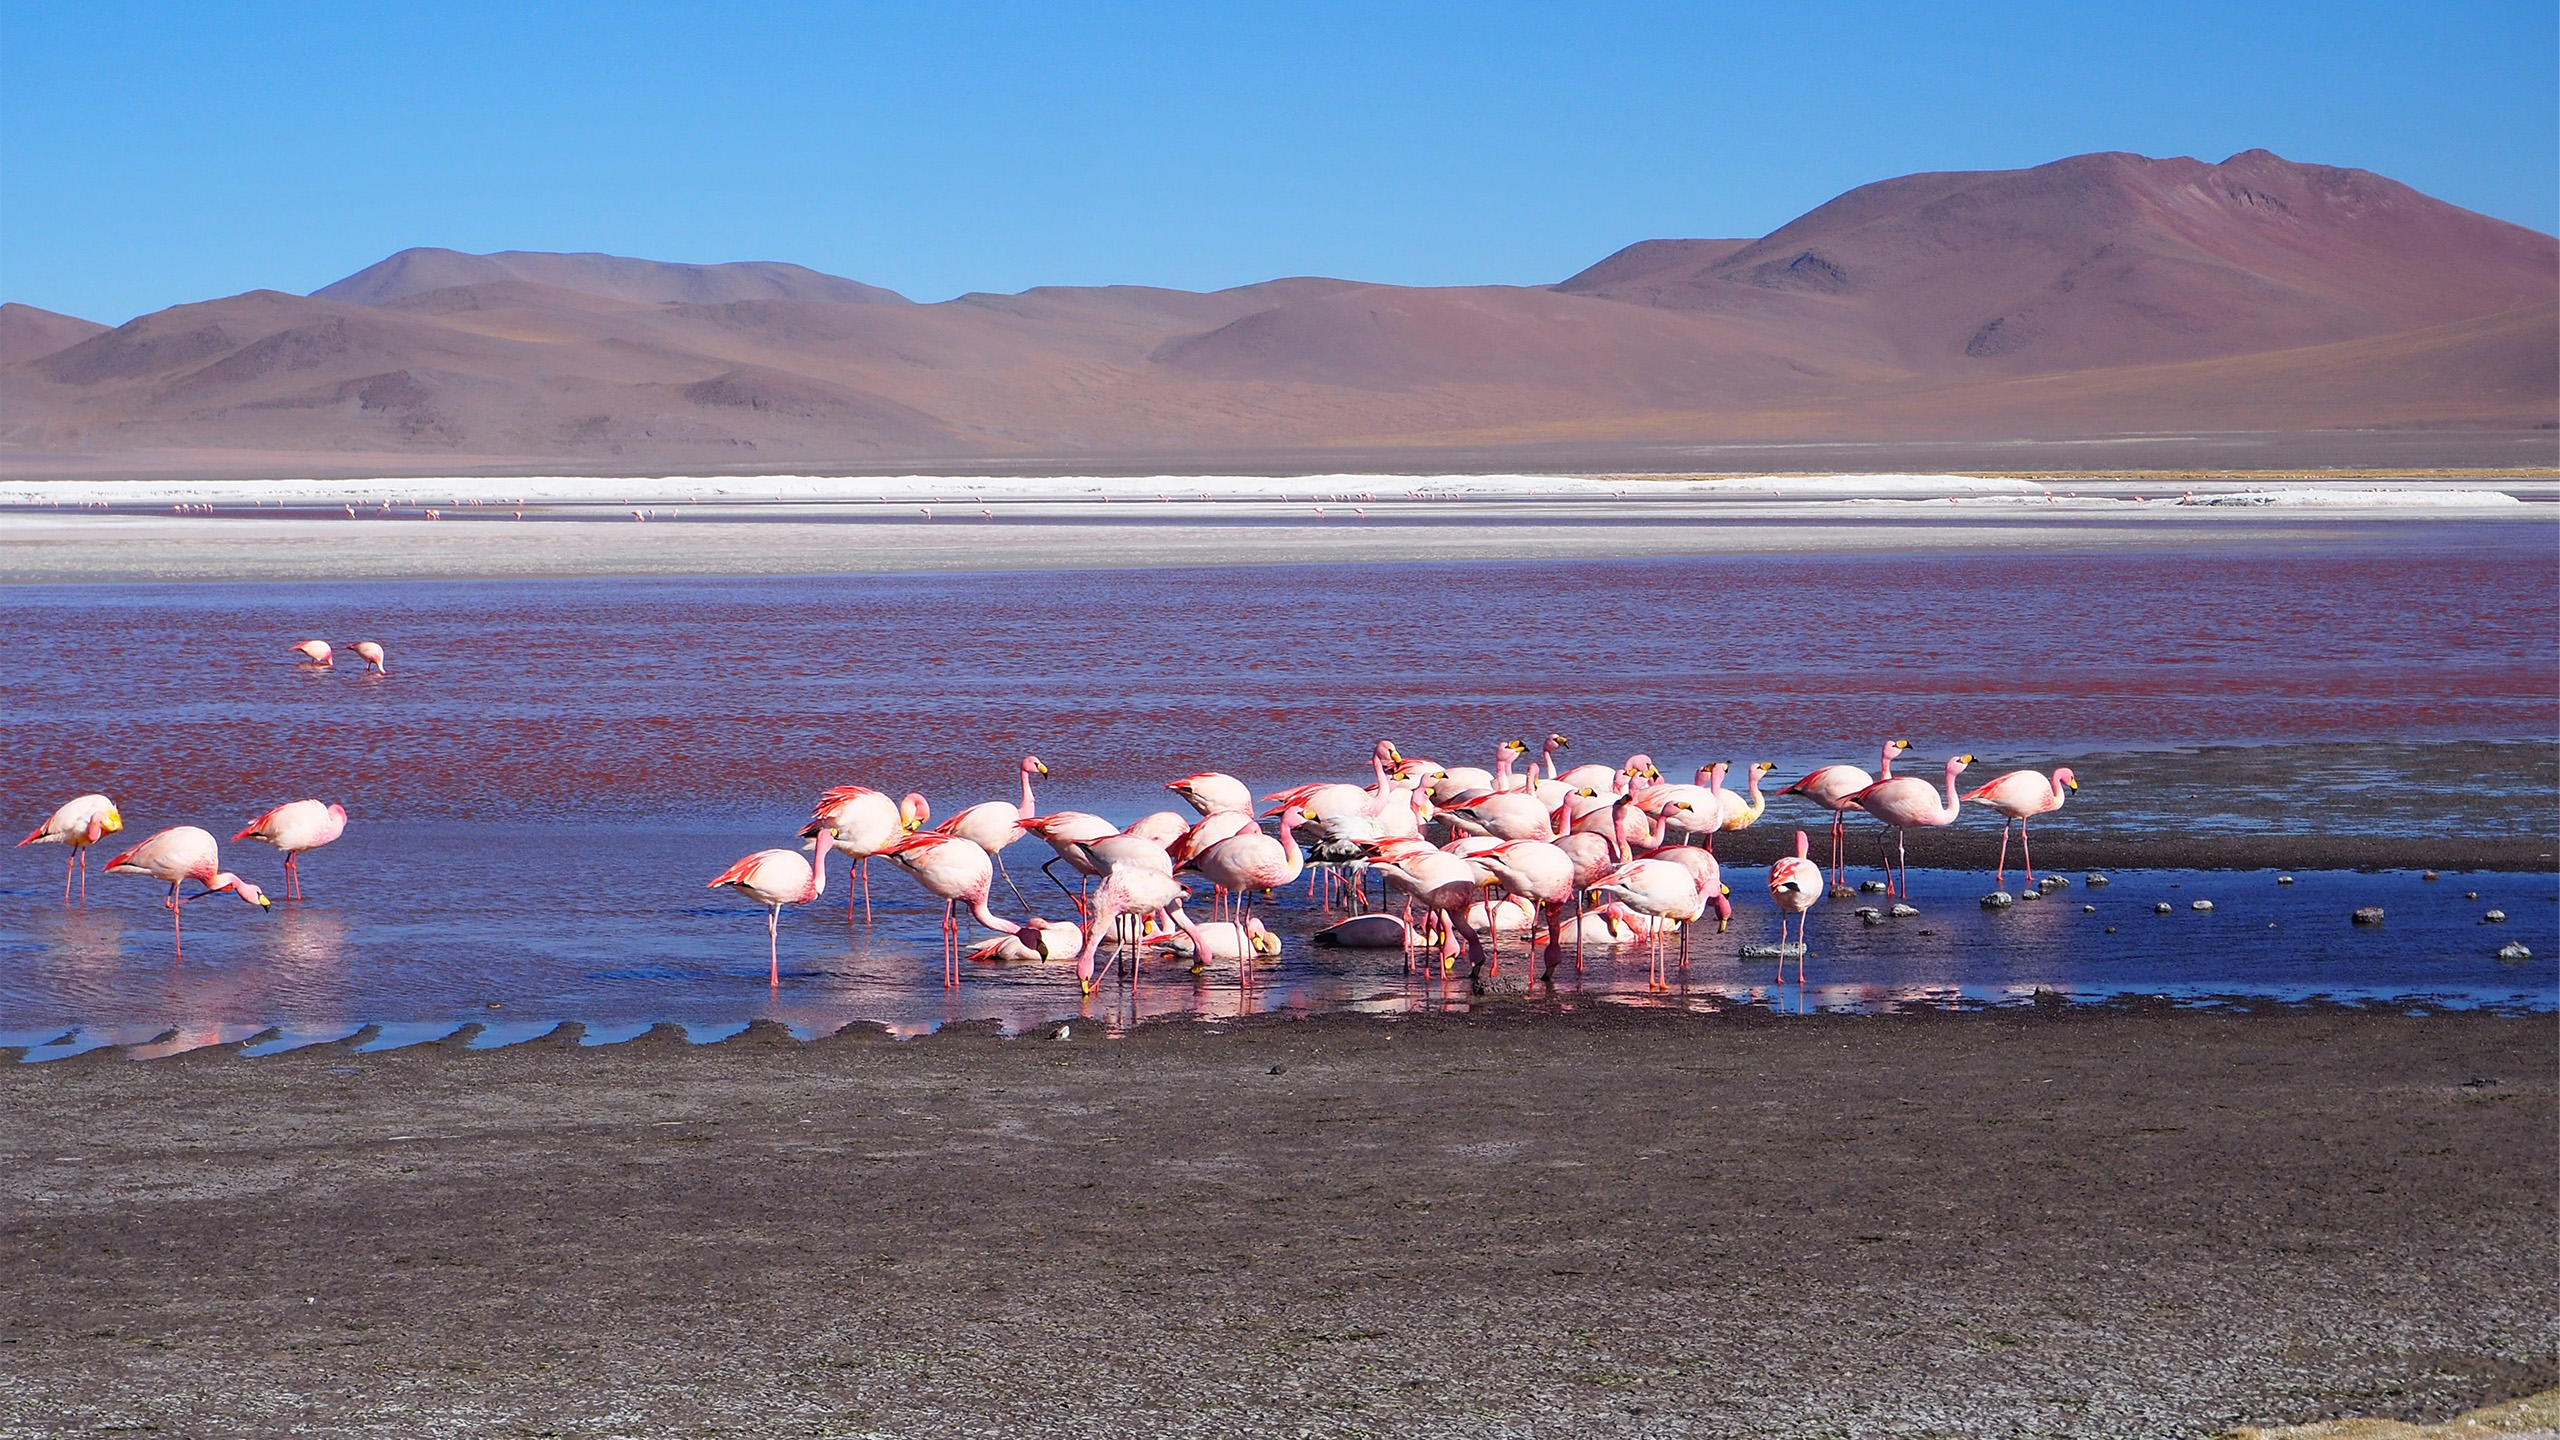 Der Titicaca-See ist für zahlreiche Pflanzen und Tiere als Lebensraum von zentraler Bedeutung; gleich drei südamerikanische Flamingo-Arten kommen hier vor. | Helveola, Shutterstock